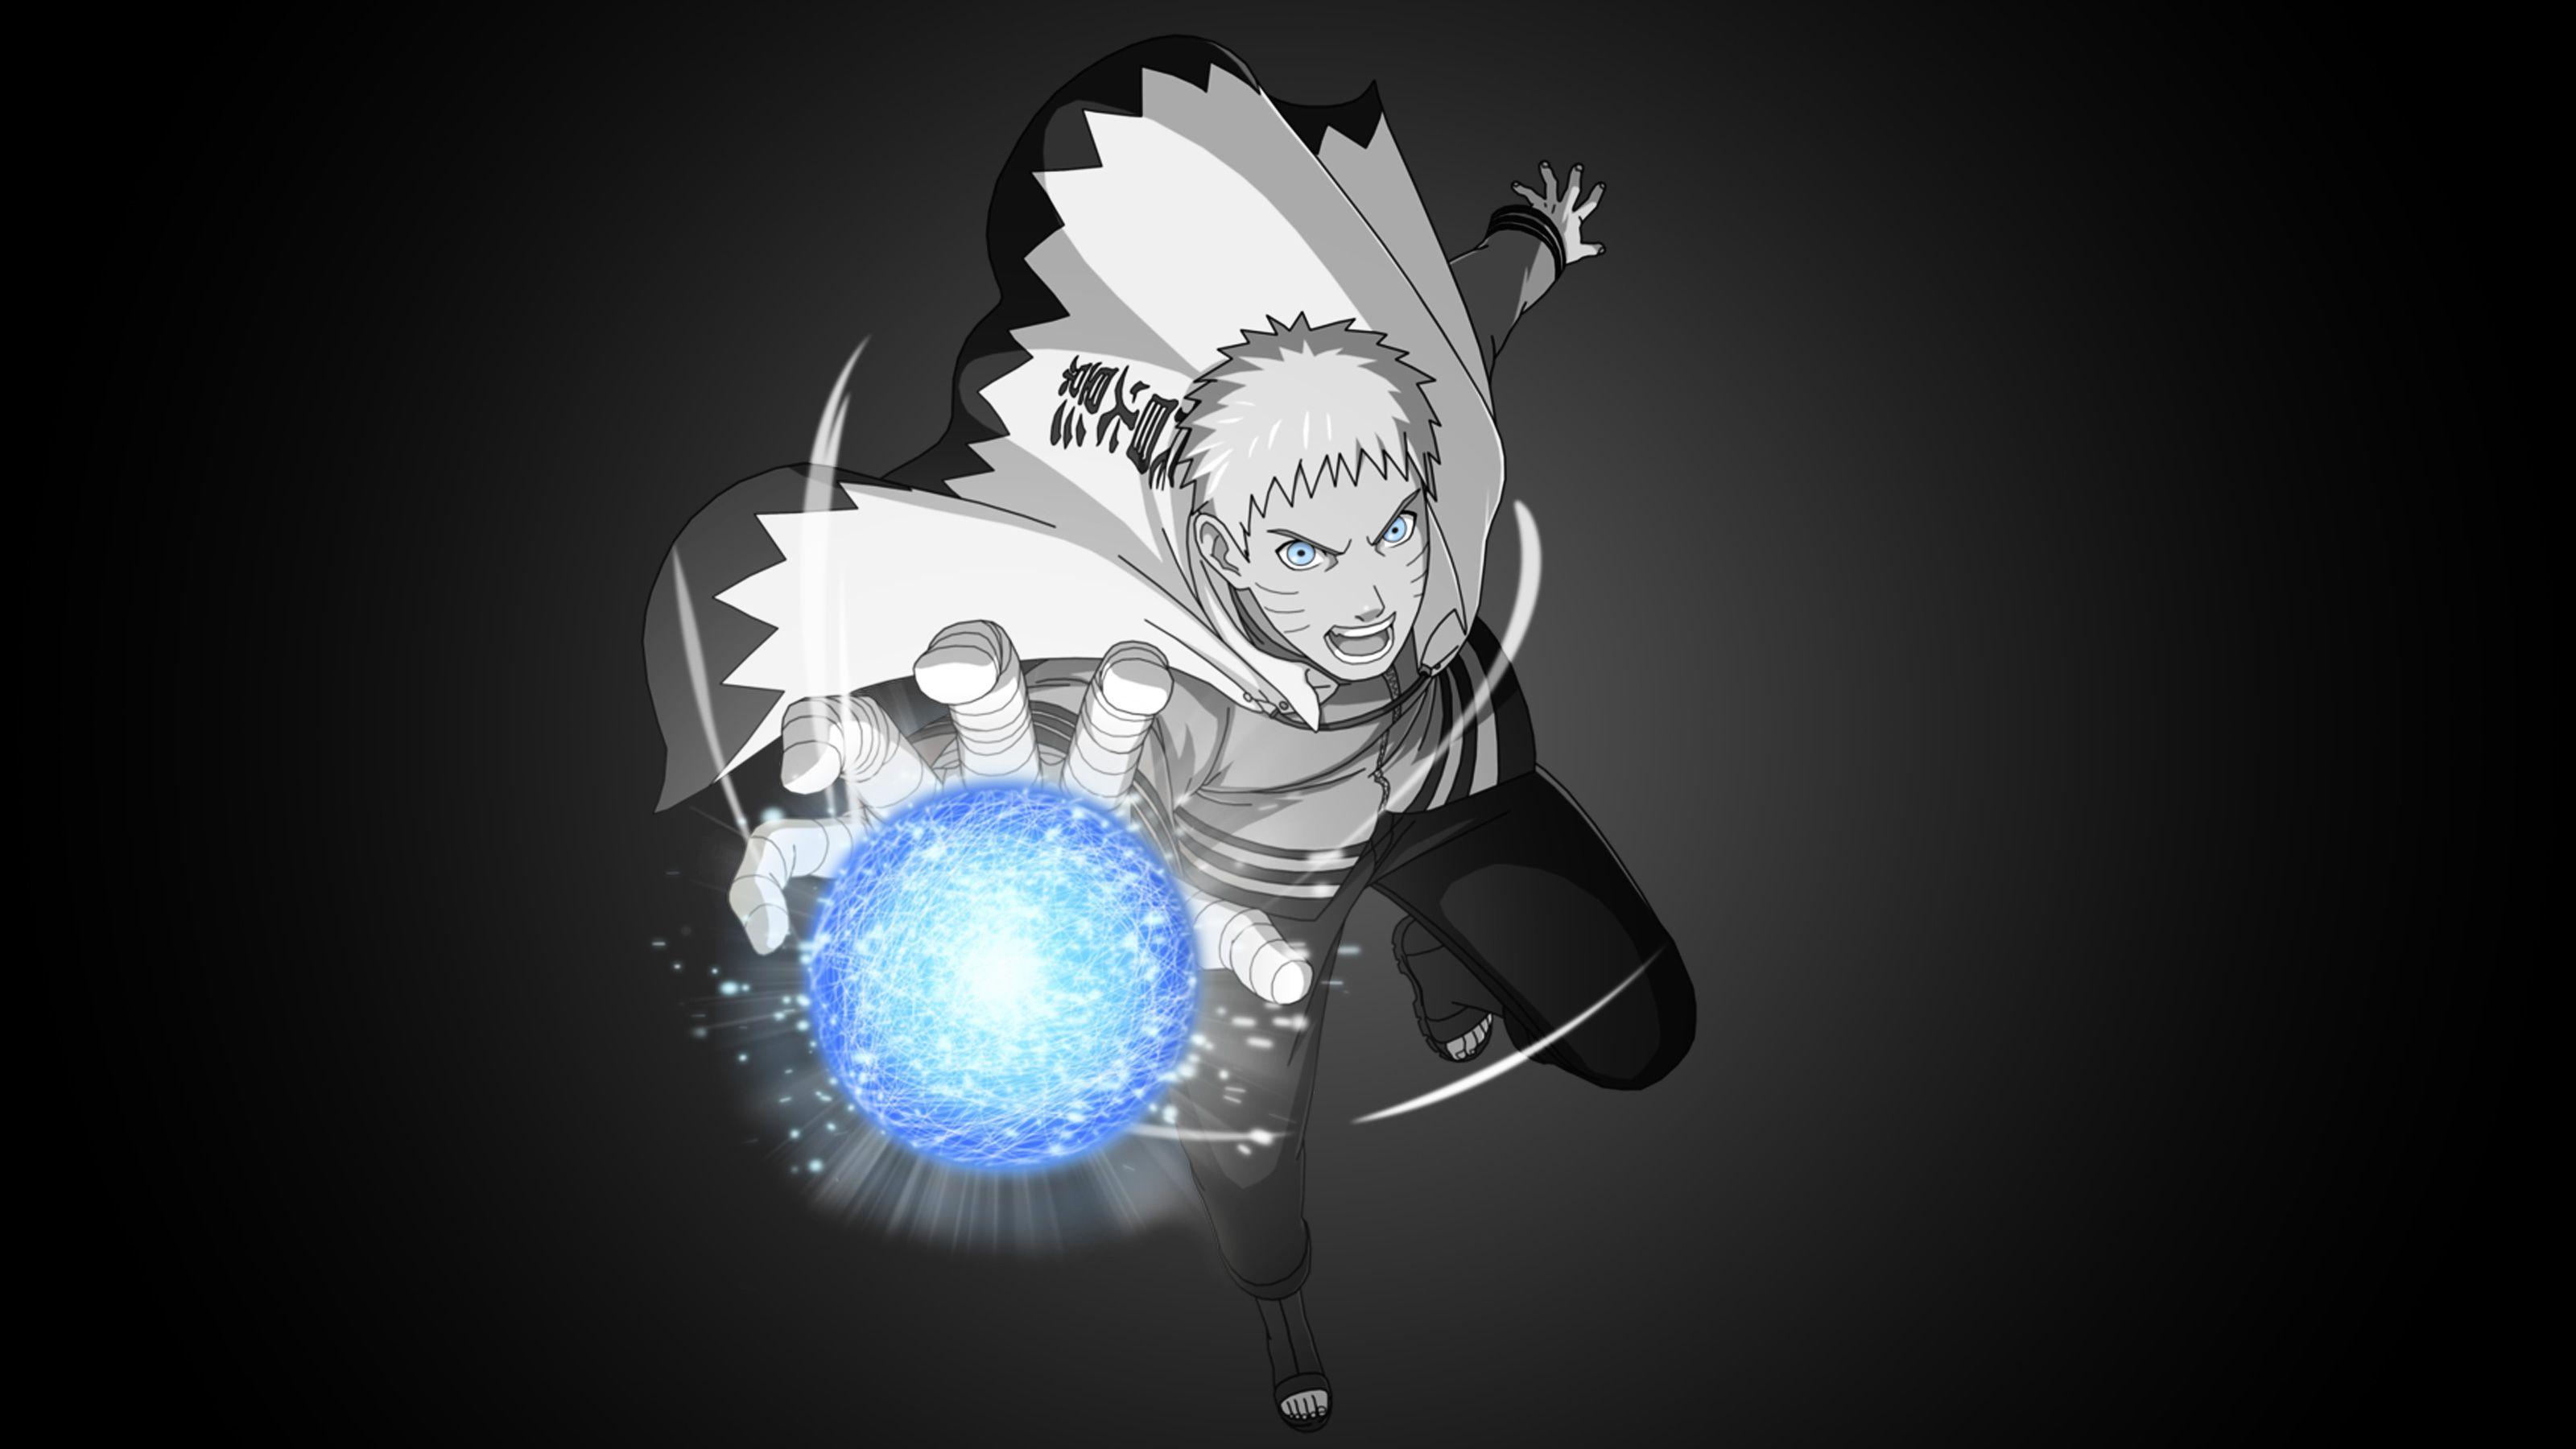 Khám phá khả năng tuyệt vời của Naruto khi sử dụng kỹ thuật Rasengan! Hình nền Naruto Rasengan sẽ đưa bạn đến thế giới siêu năng lực của anh chàng trẻ tuổi. Cùng thưởng thức hình nền đầy màu sắc và sự hoành tráng của Naruto khi anh ta tung ra đòn tấn công đầy uy lực này!